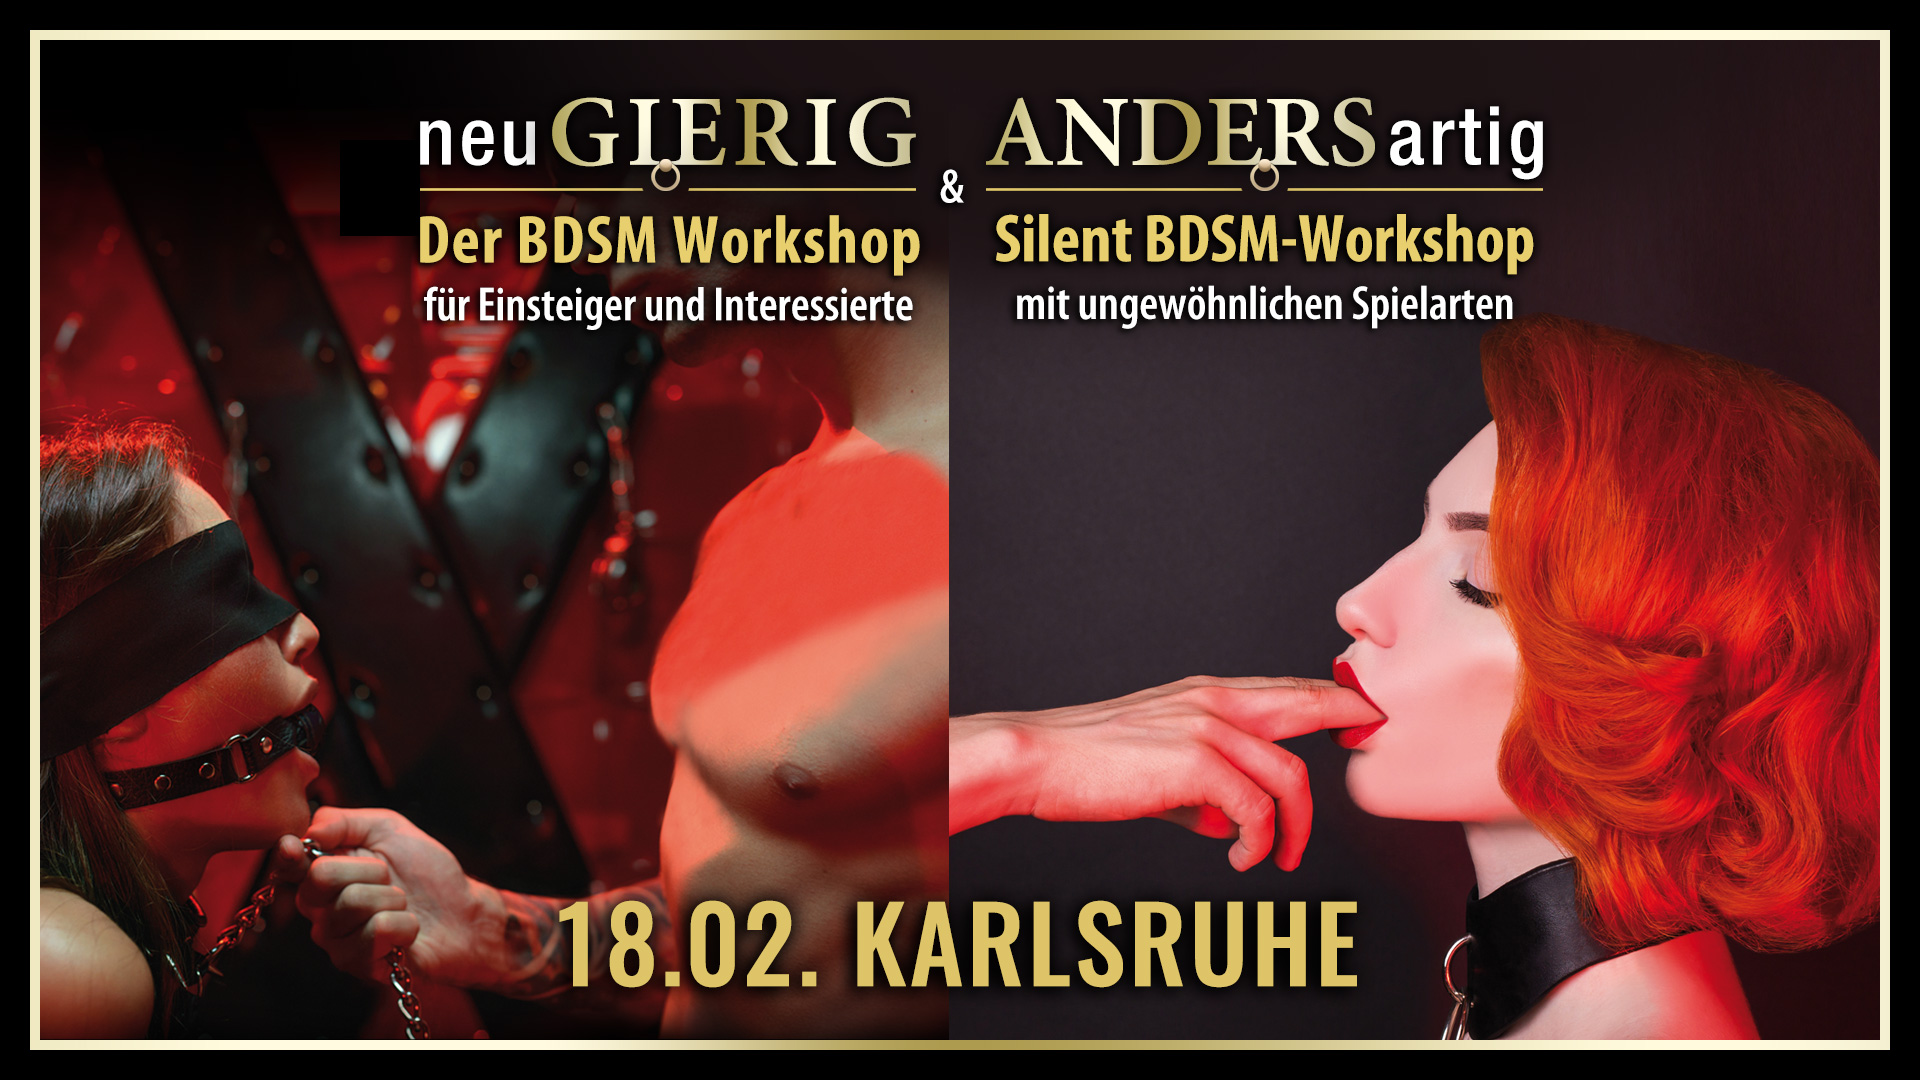 neuGIERIG » Der BDSM-Workshop für Einsteiger & Interessierte und ANDERSartig » Der Silent BDSM-Workshop mit leisen Spielarten für das Spiel nach 22 Uhr, ungewöhnlichen Spieltechniken und Spielsachen sowie kreativen Spielideen mit GILLIAN in Karlsruhe.